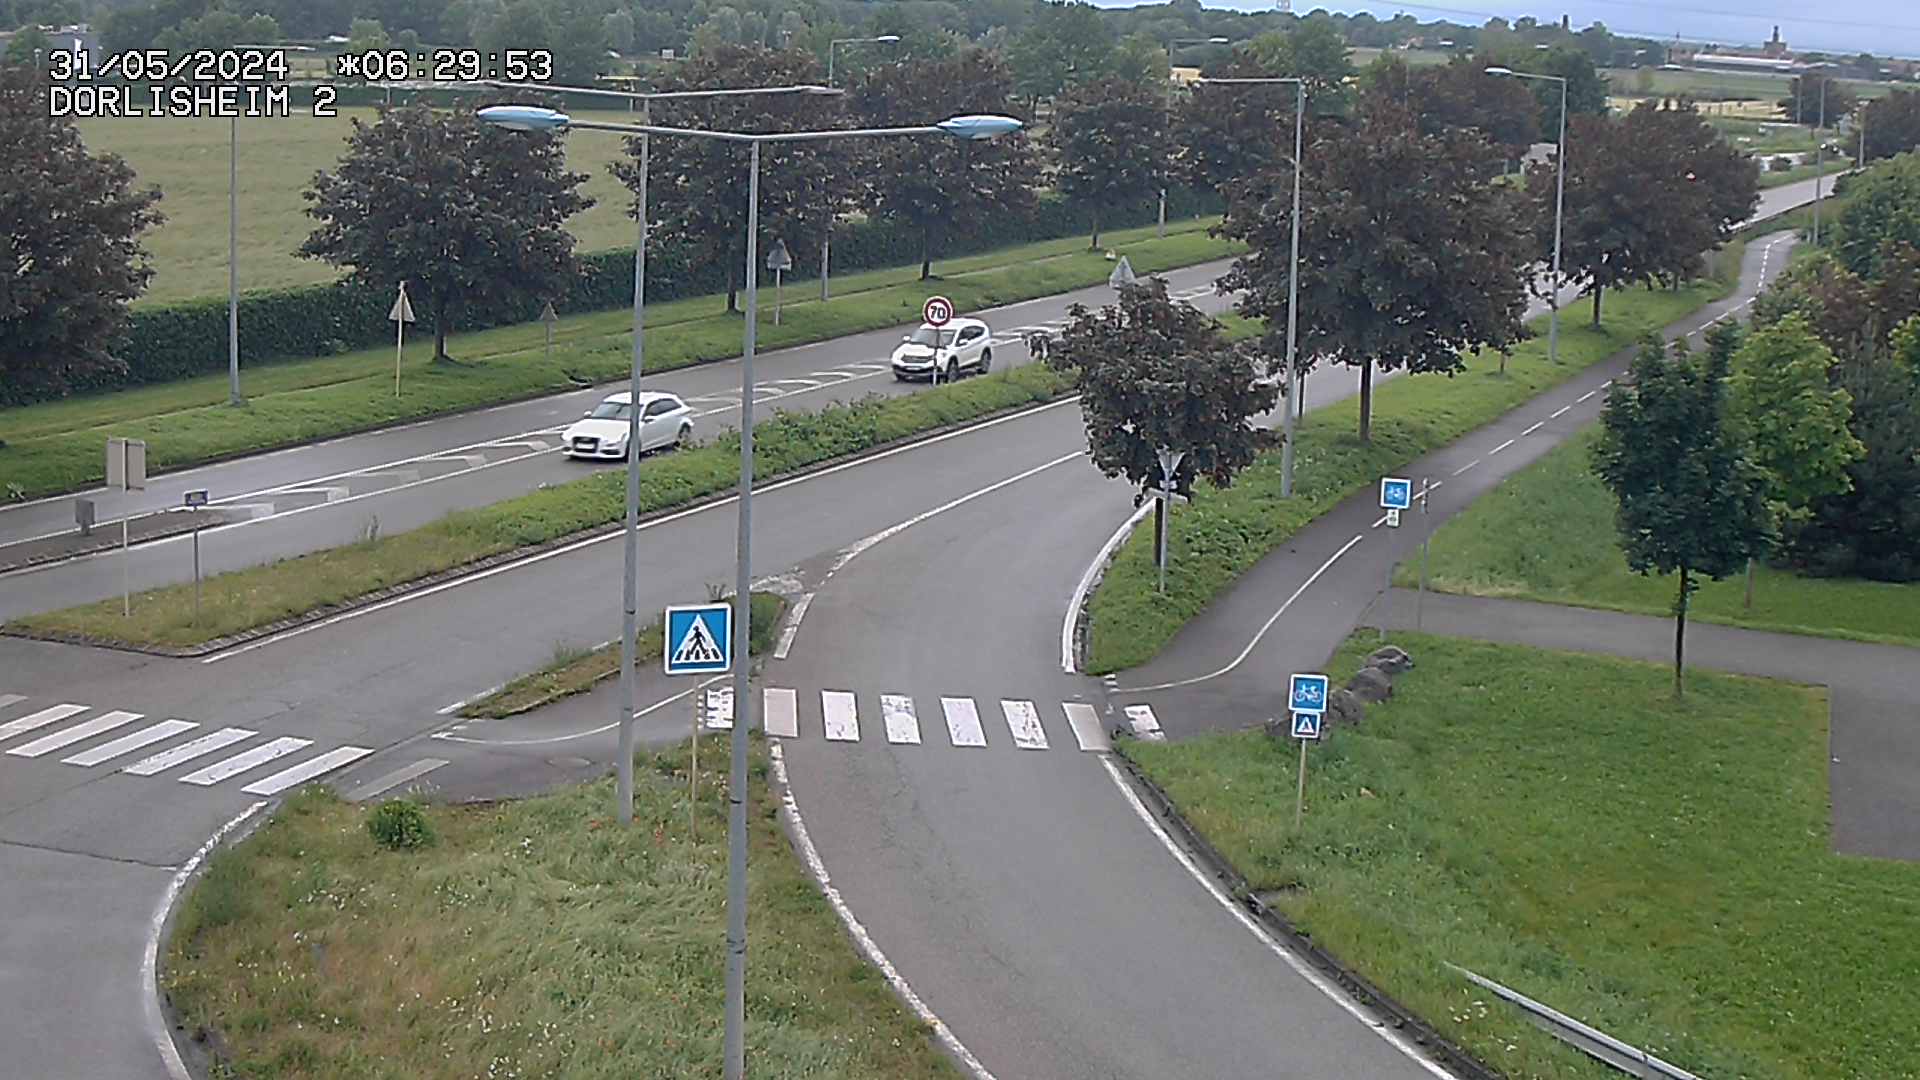 Webcam à Dorlisheim, au sud de Molsheim, au niveau du rond-point menant à l'A352. Caméra située à la jonction entre la D392, la D500 et la D2422. Vue orientée vers Altorf et Strasbourg